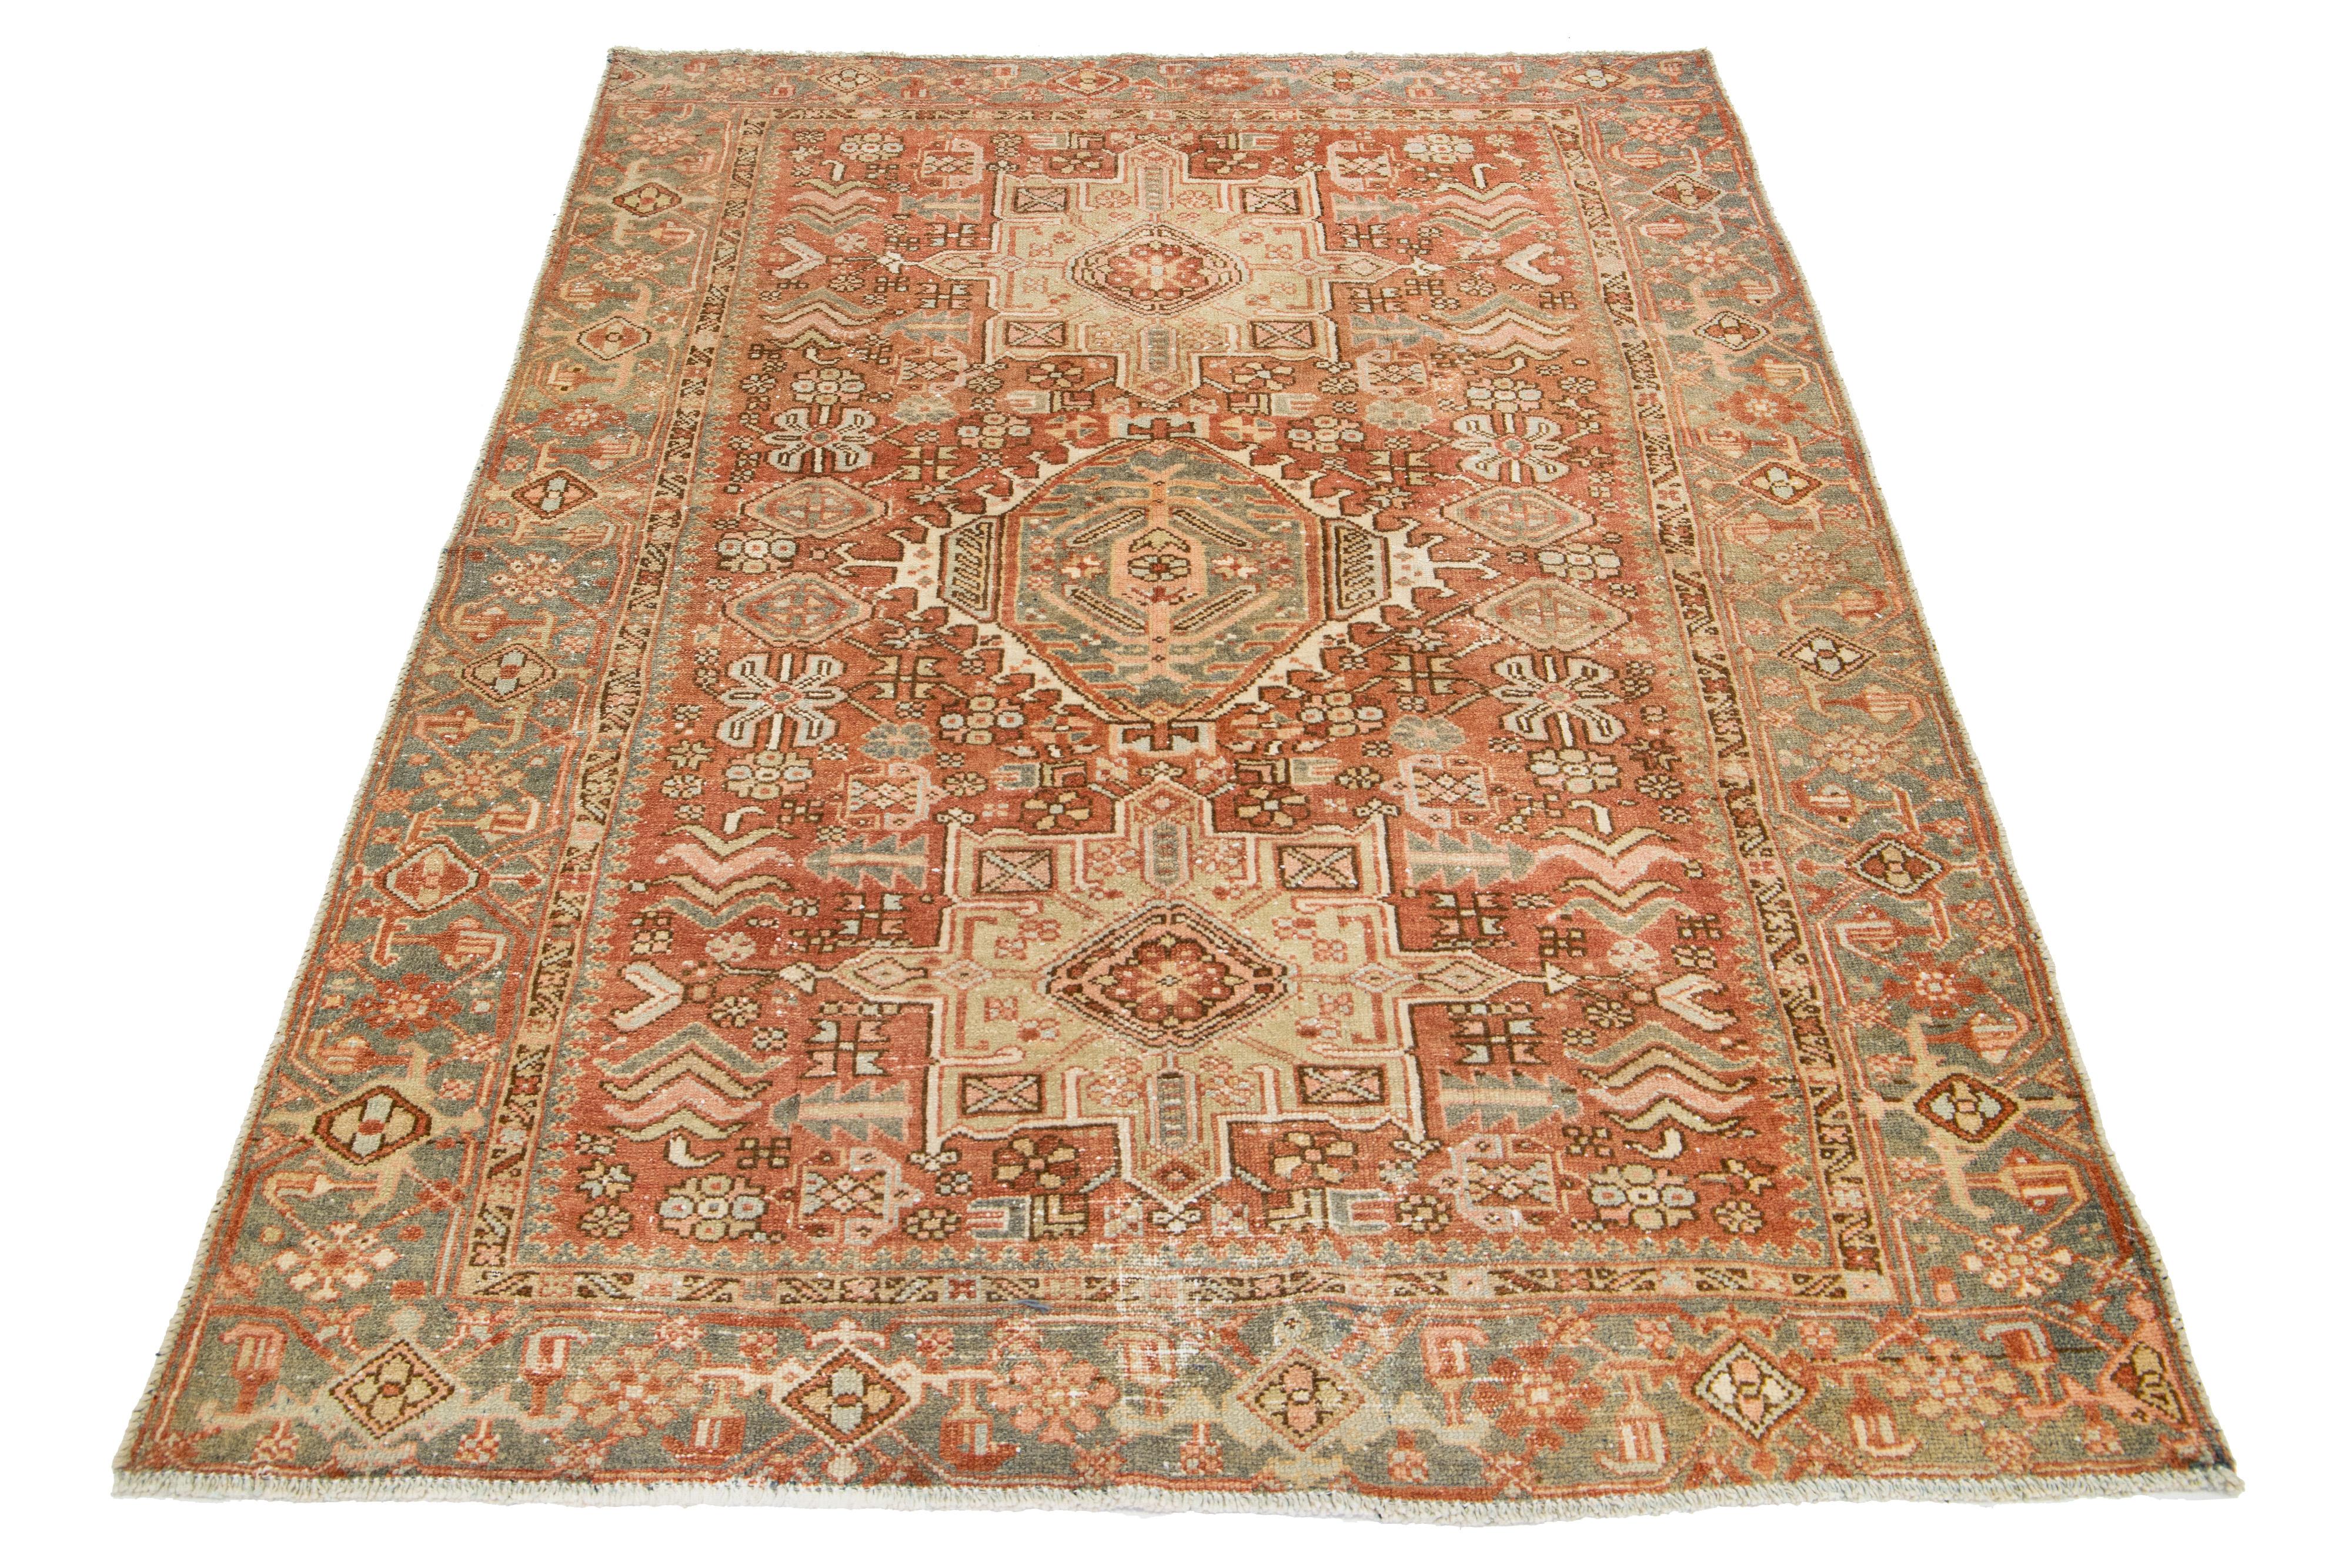 Dieser antike persische Heriz-Teppich ist aus handgeknüpfter Wolle gefertigt. Das rostorangefarbene Feld zeigt ein fesselndes Tribal-Muster, das mit Beige-, Pfirsich-, Grau- und Brauntönen verziert ist.

Dieser Teppich misst 4'6